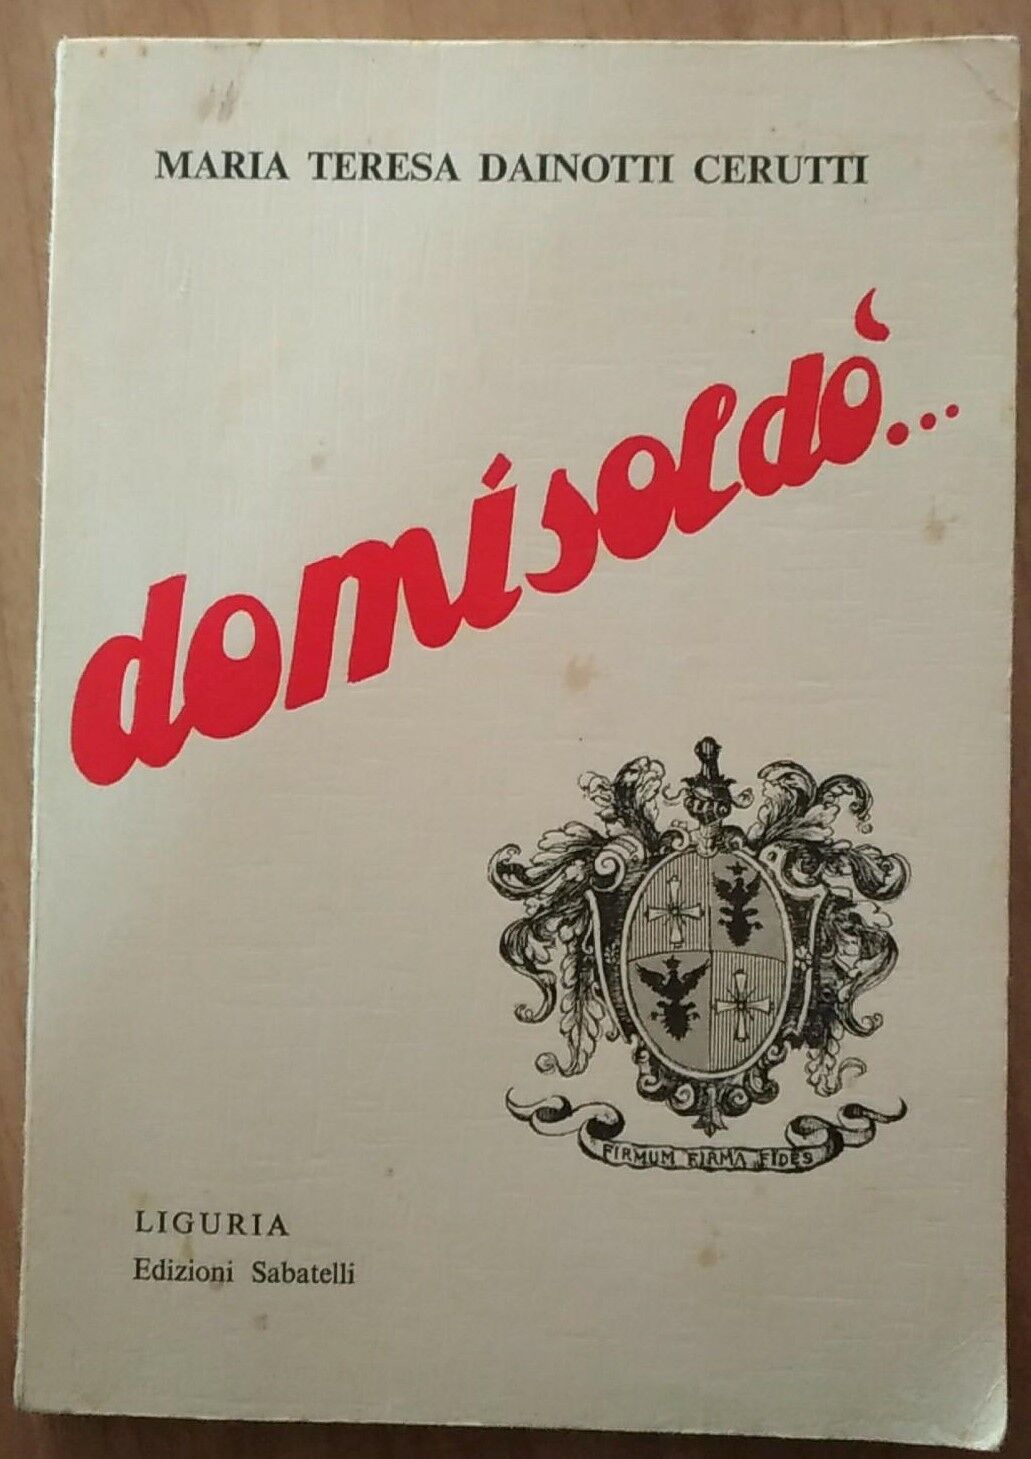  Domisold? - Con dedica  - Maria Teresa Dainotti Cerutti,  1968,  Sabatelli - S